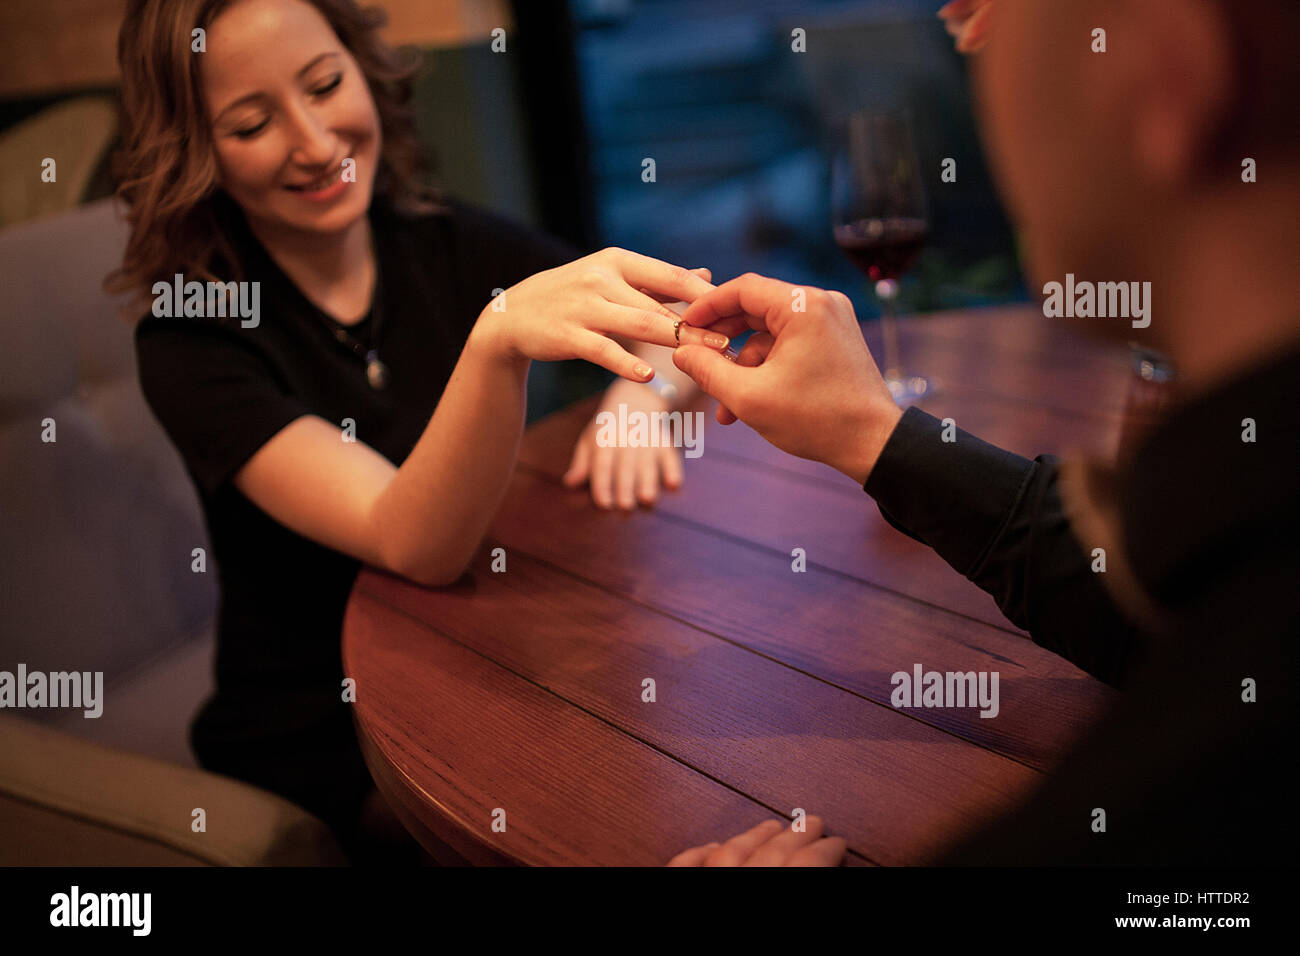 Jeune homme fait femme proposition de mariage et met une bague de fiançailles à son doigt. Ils sont assis à table à côté de verres de vin. Banque D'Images